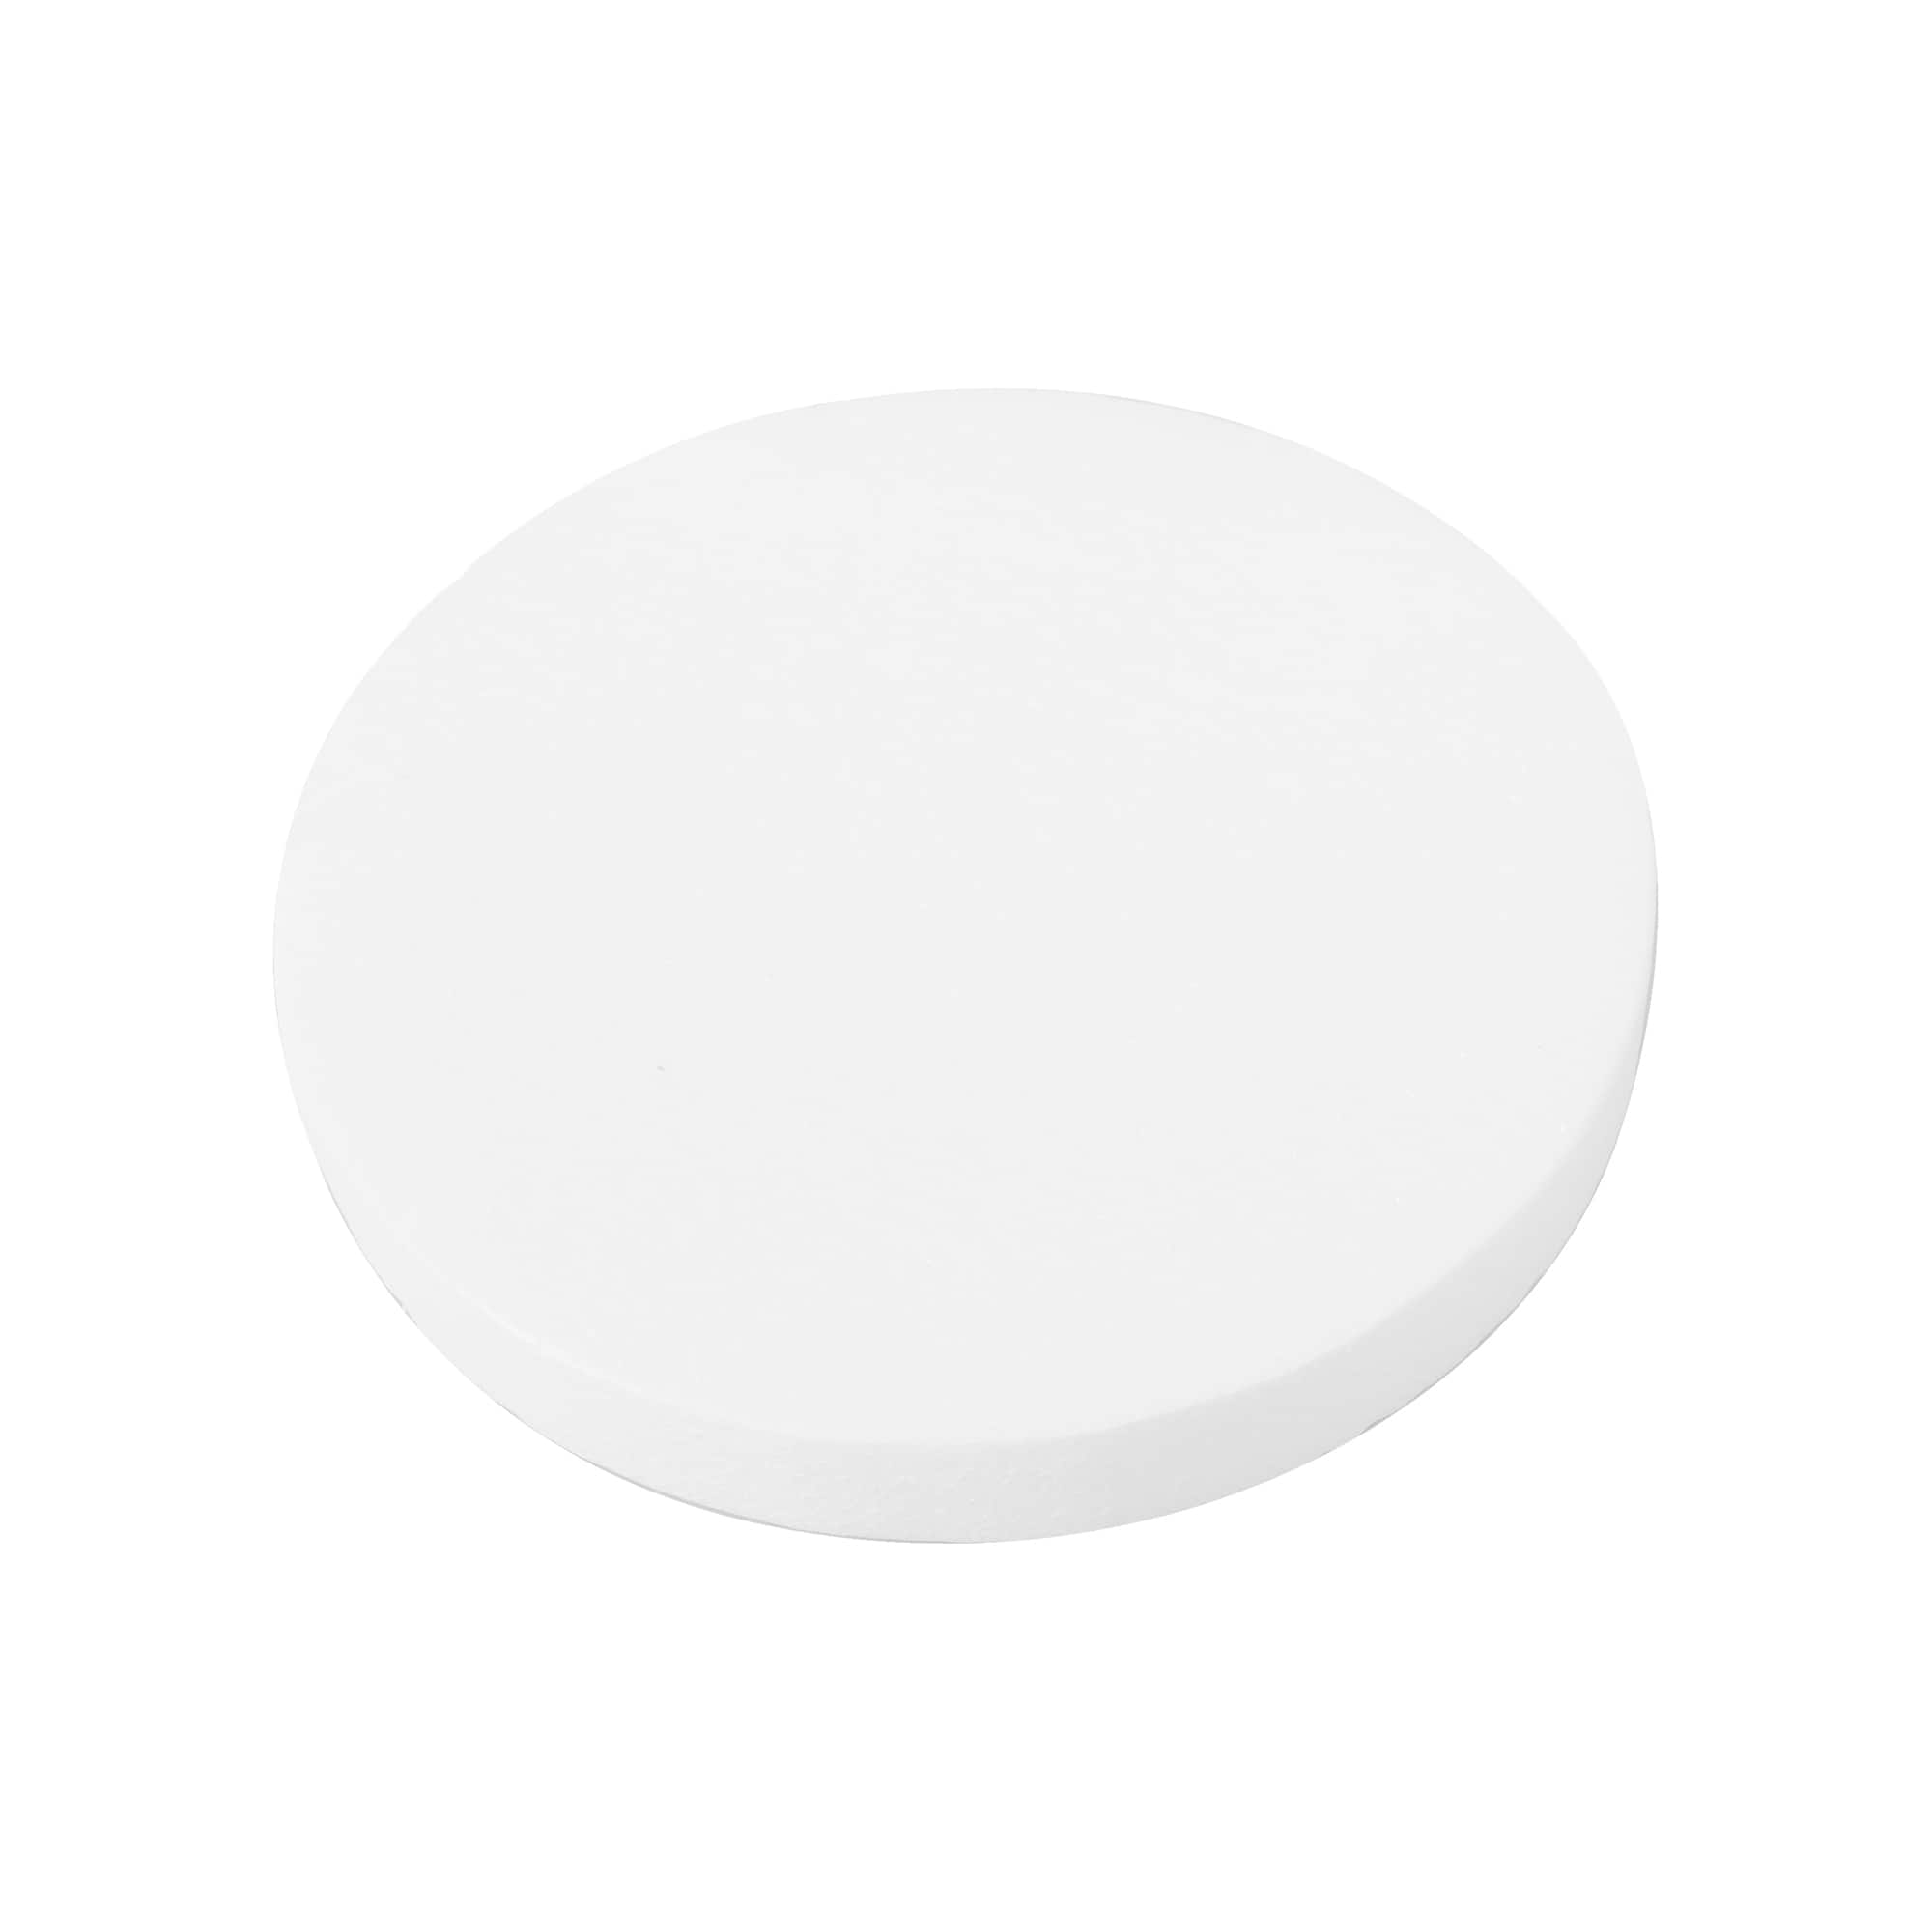 White Styrofoam Disc - 7.5 Diameter